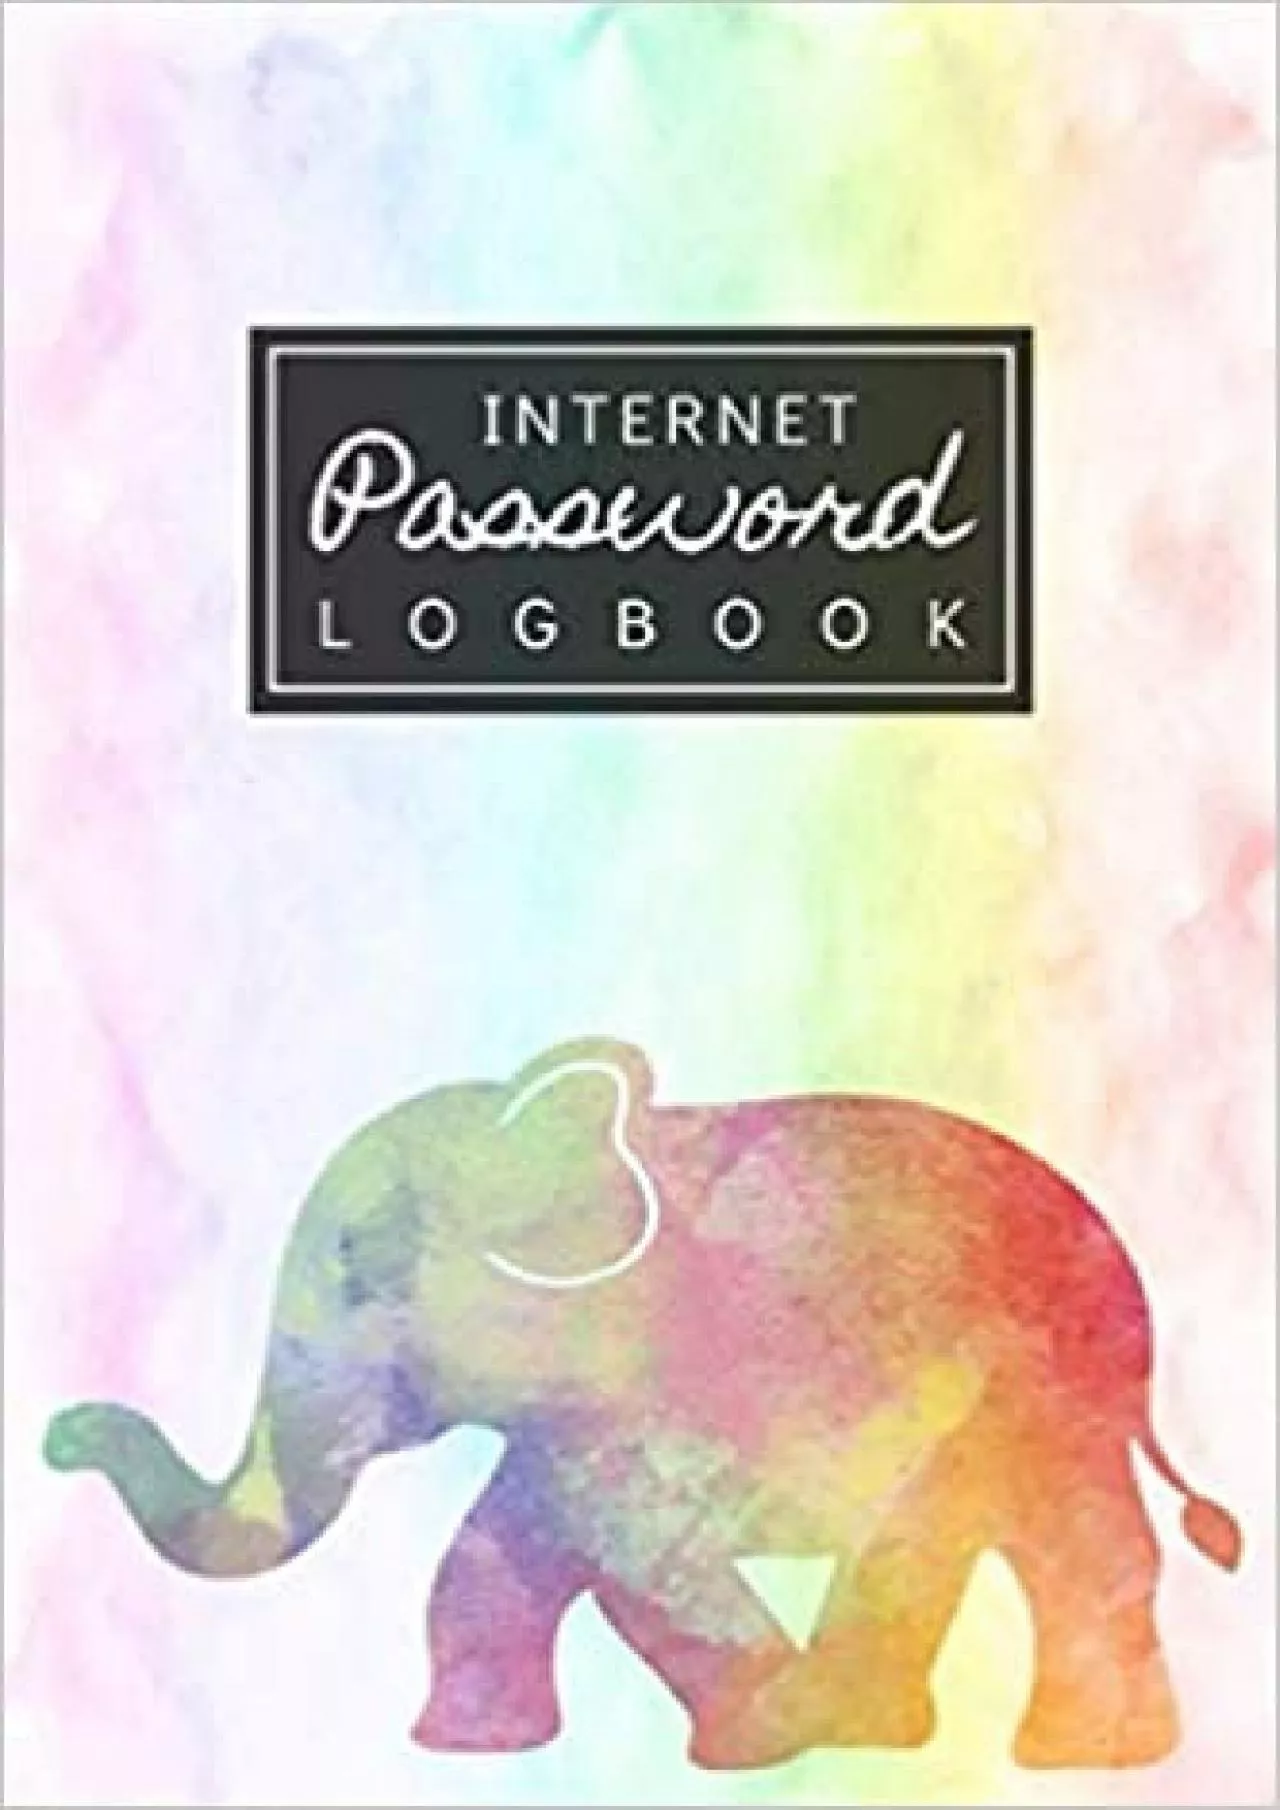 (DOWNLOAD)-INTERNET PASSWORD LOGBOOK Watercolor Elephant Rainbow Password Journal Password